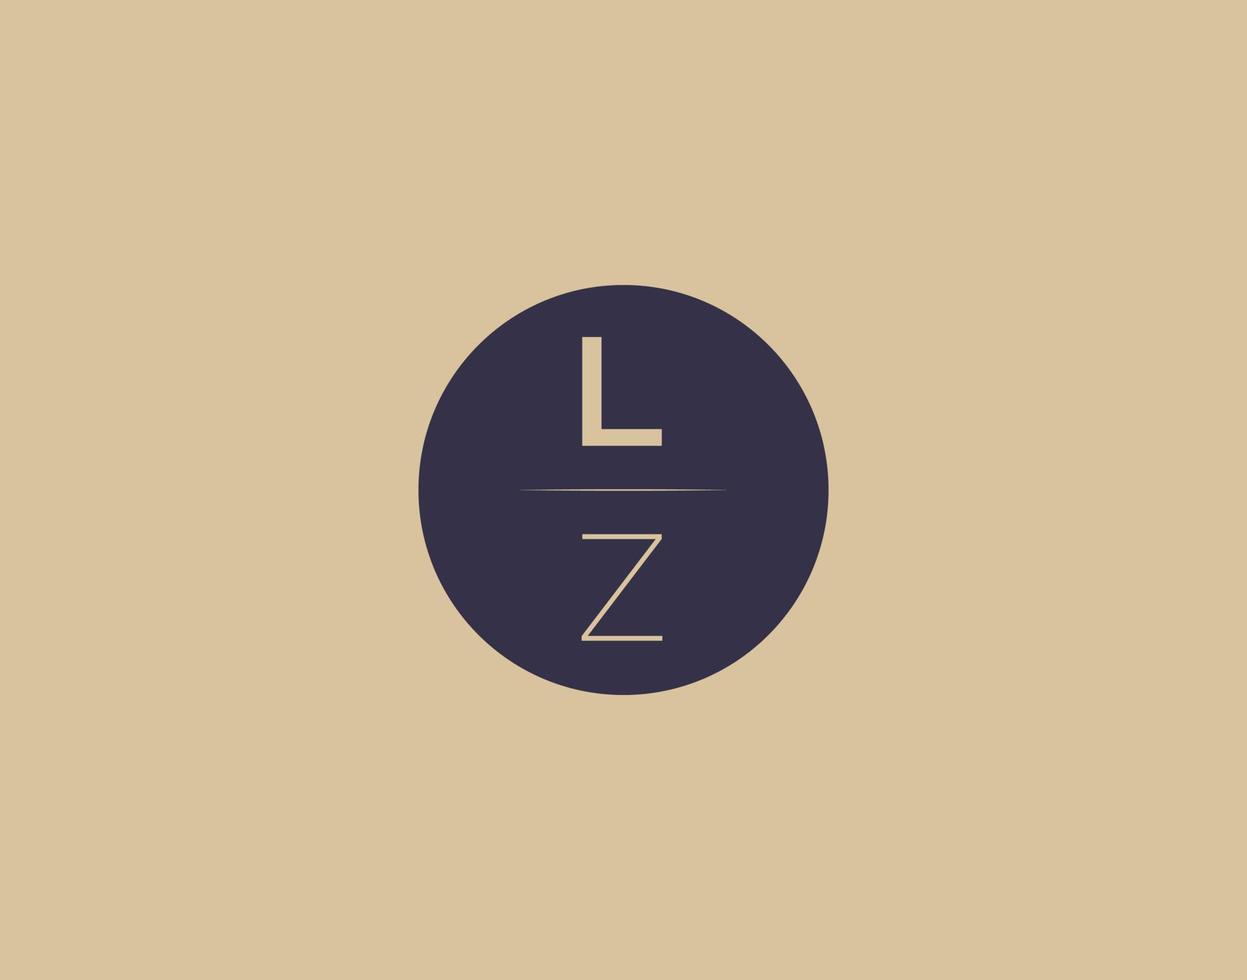 imagens vetoriais de design de logotipo moderno e elegante de letra lz vetor